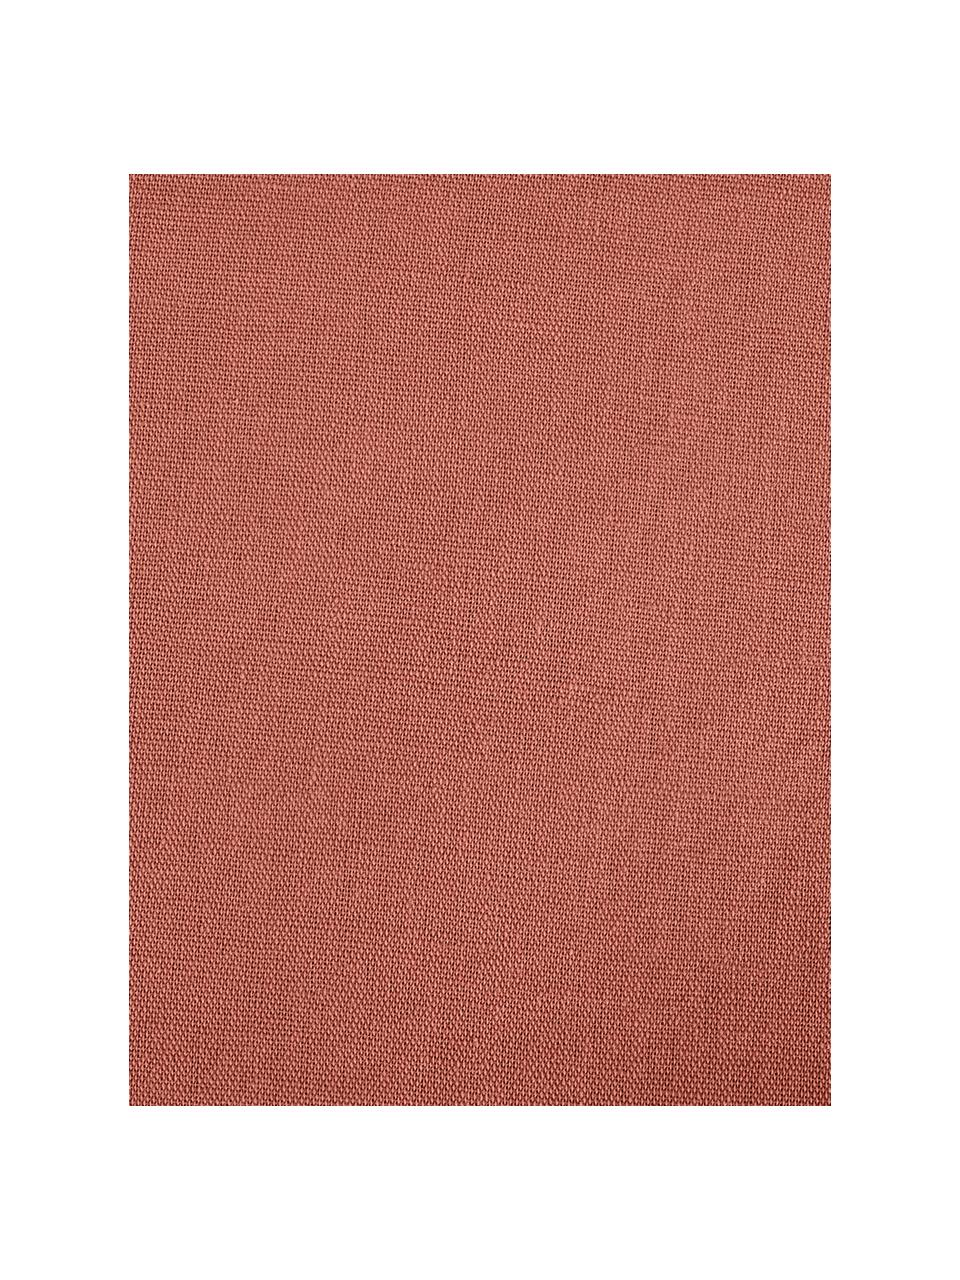 Biancheria da letto in lino lavato color terracotta Nature, 52% lino, 48% cotone
Con effetto stonewash per una presa morbida, Terracotta, 155 x 200 cm + 1 federa 50 x 80 cm